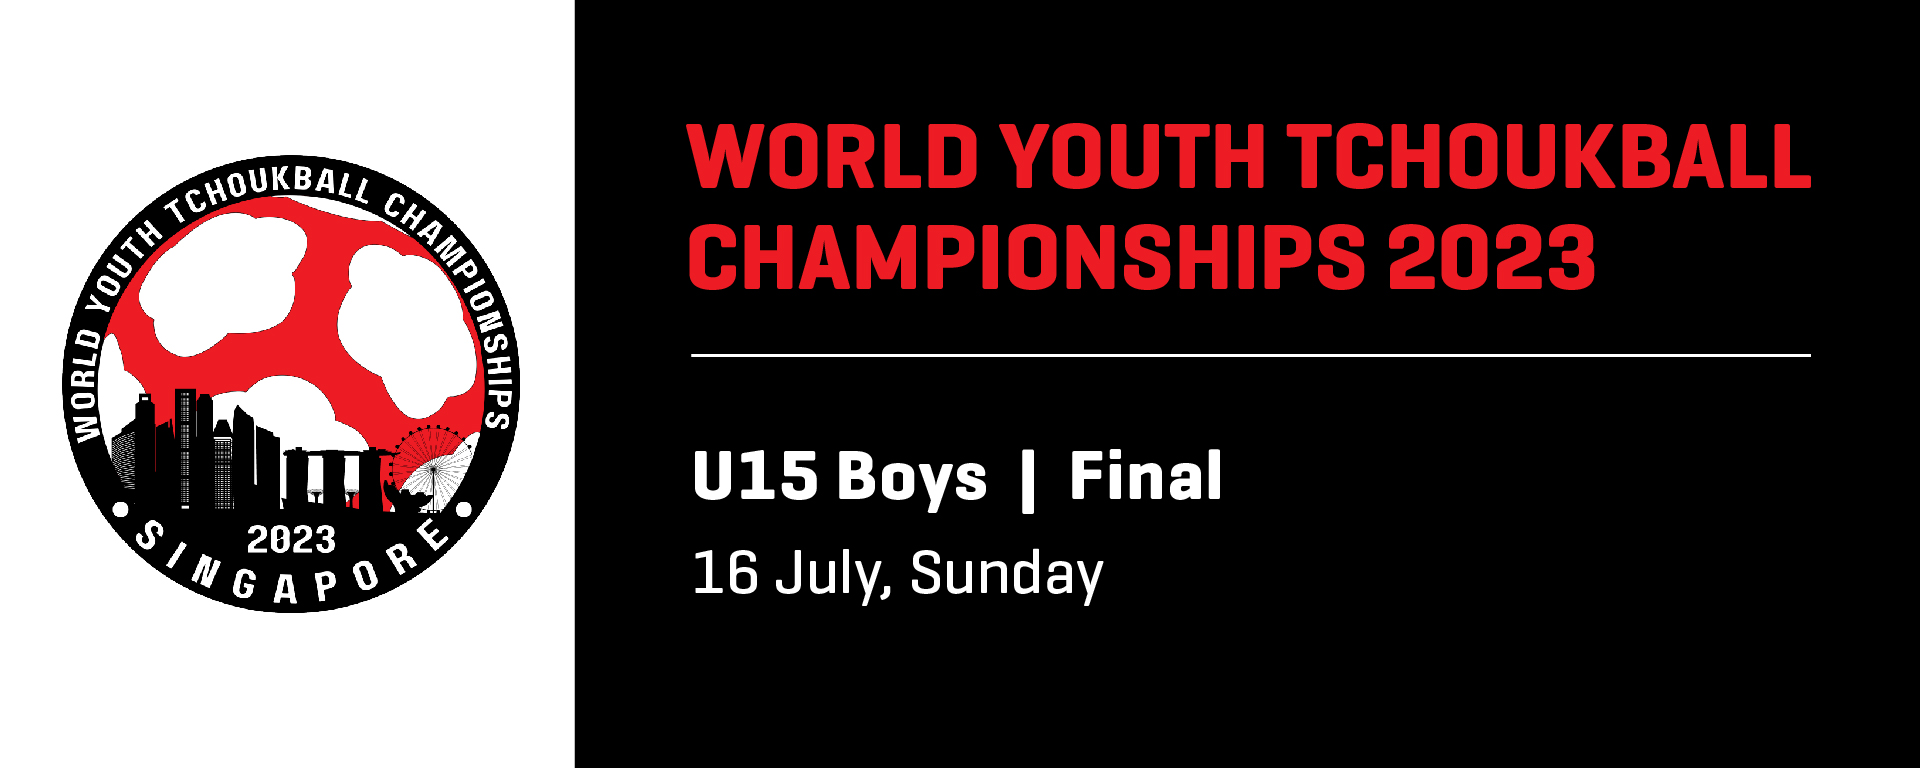 World Youth Tchoukball Championships 2023 | U15 Boys Final | Singapore vs Chinese Taipei